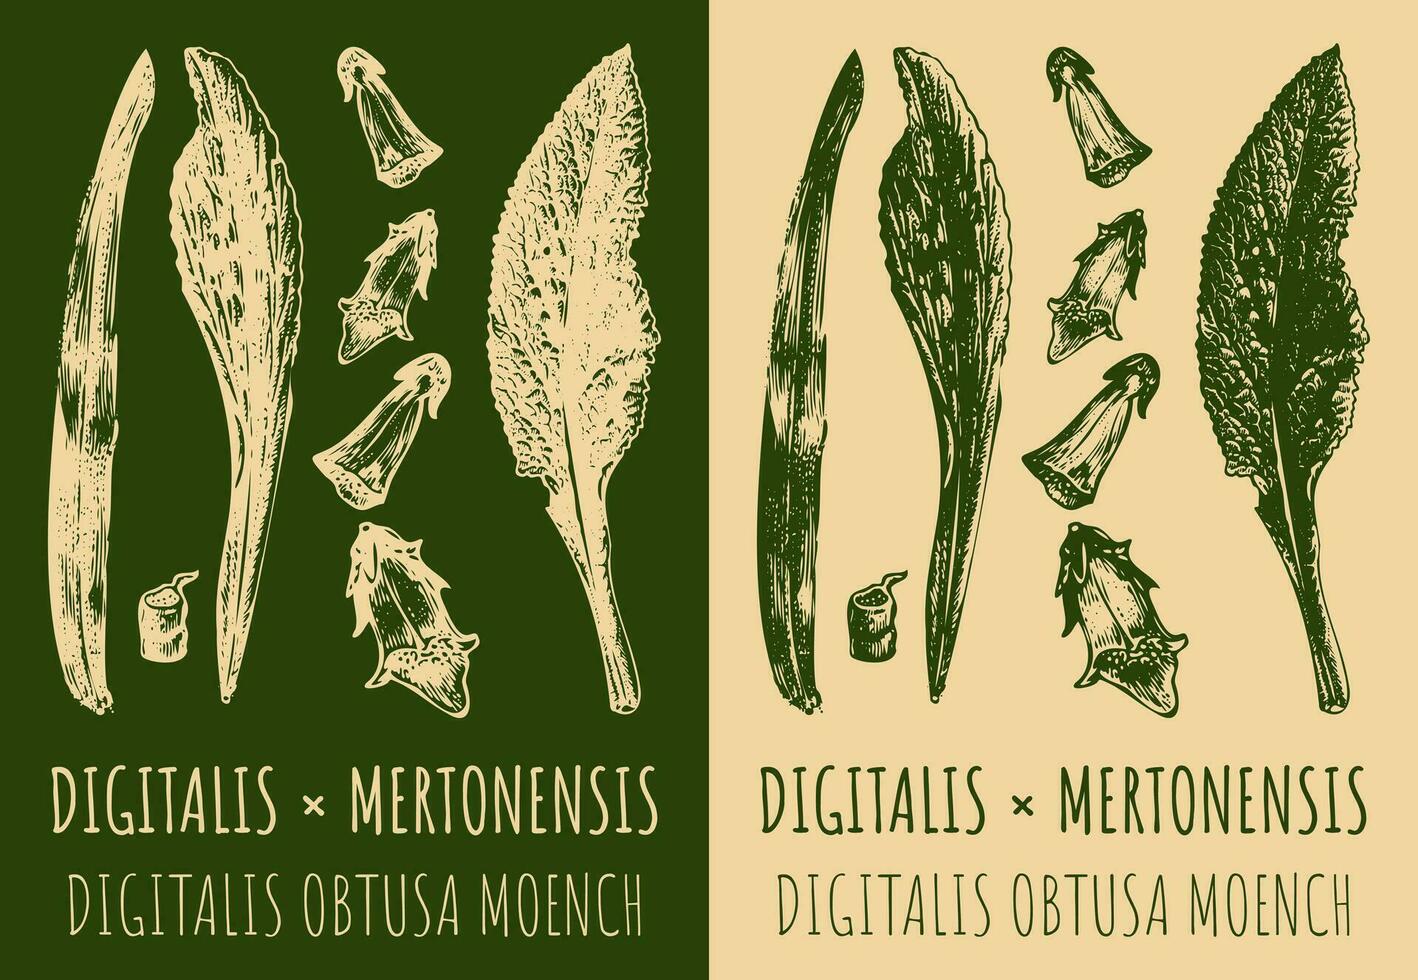 Vektor Zeichnung Digitalis oder mertonensis. Hand gezeichnet Illustration. das Latein Name ist Digitalis obtusa moench.